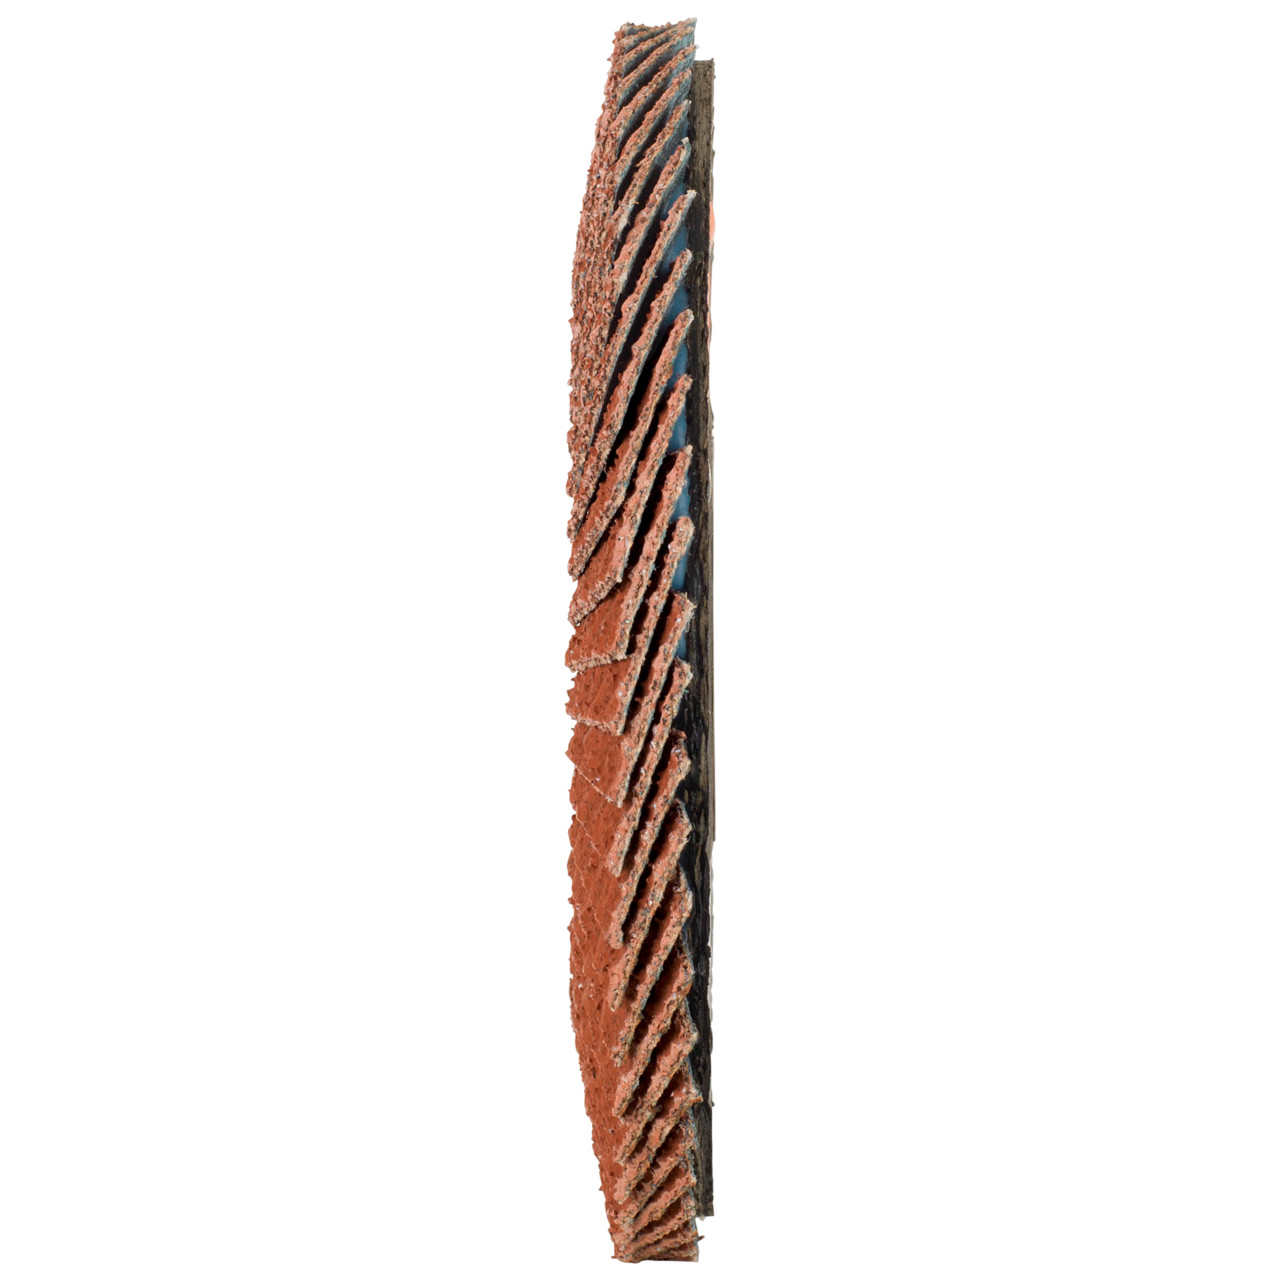 Tyrolit Rondelle éventail DxH 115x22,23 Pour les métaux non ferreux, P60, Forme : 28A - modèle droit (modèle à corps en fibre de verre), Art. 707155